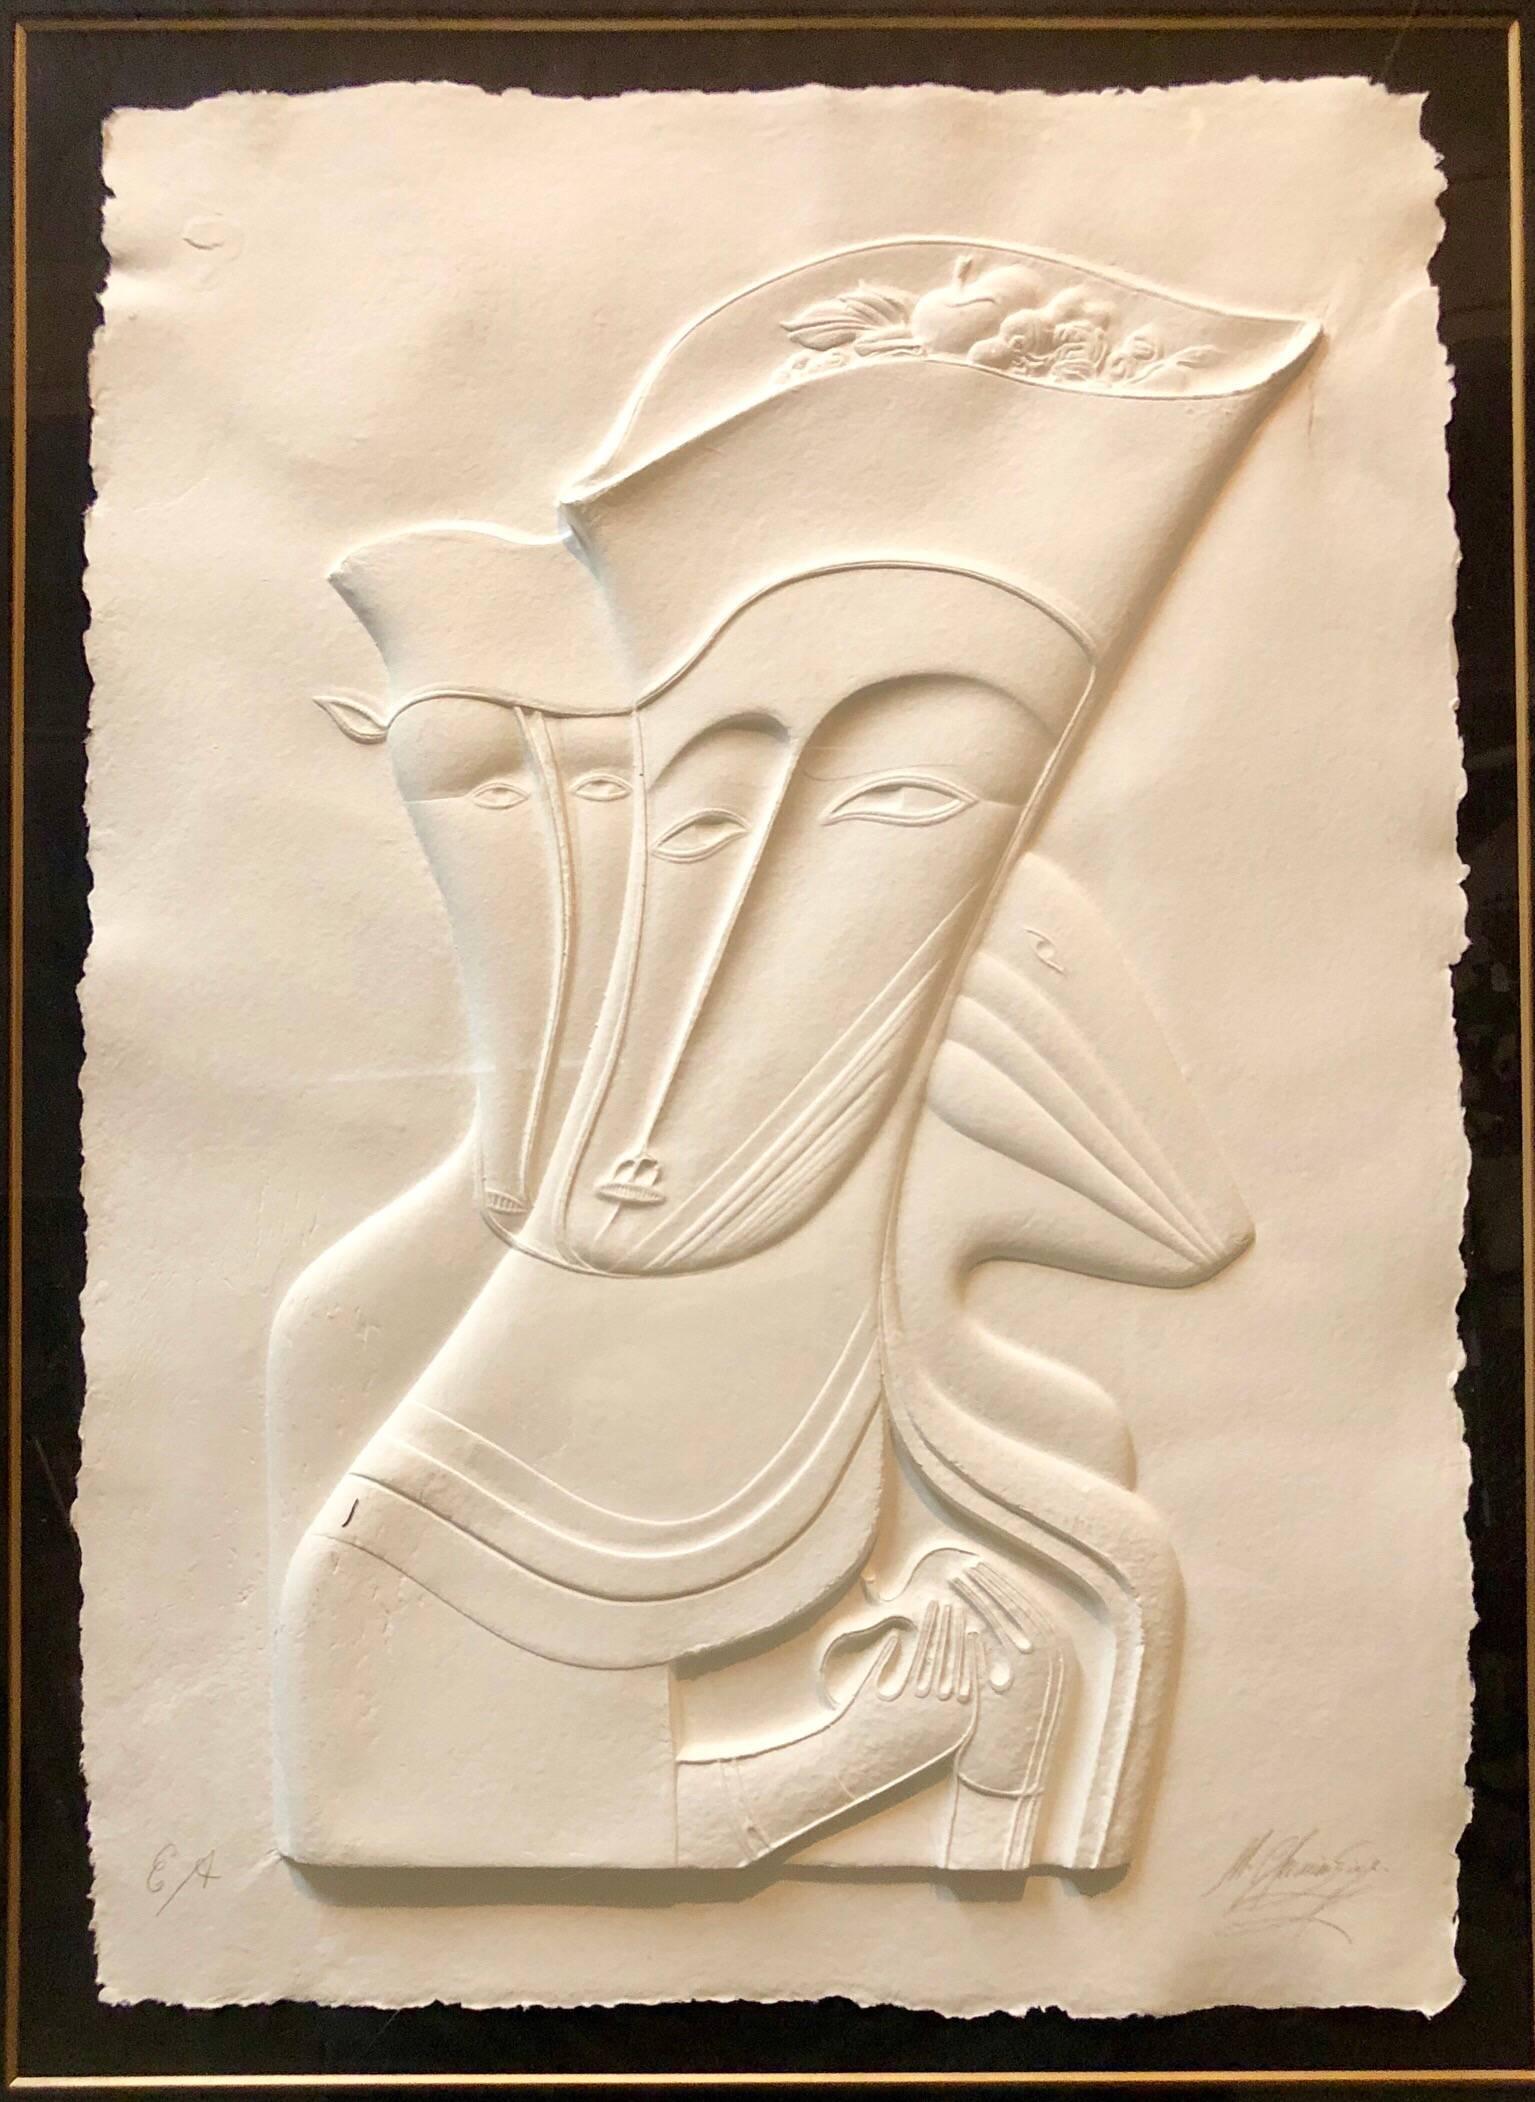 Mihail Chemiakin Figurative Sculpture - Post Soviet Non Conformist Russian Cast Paper Sculpture 